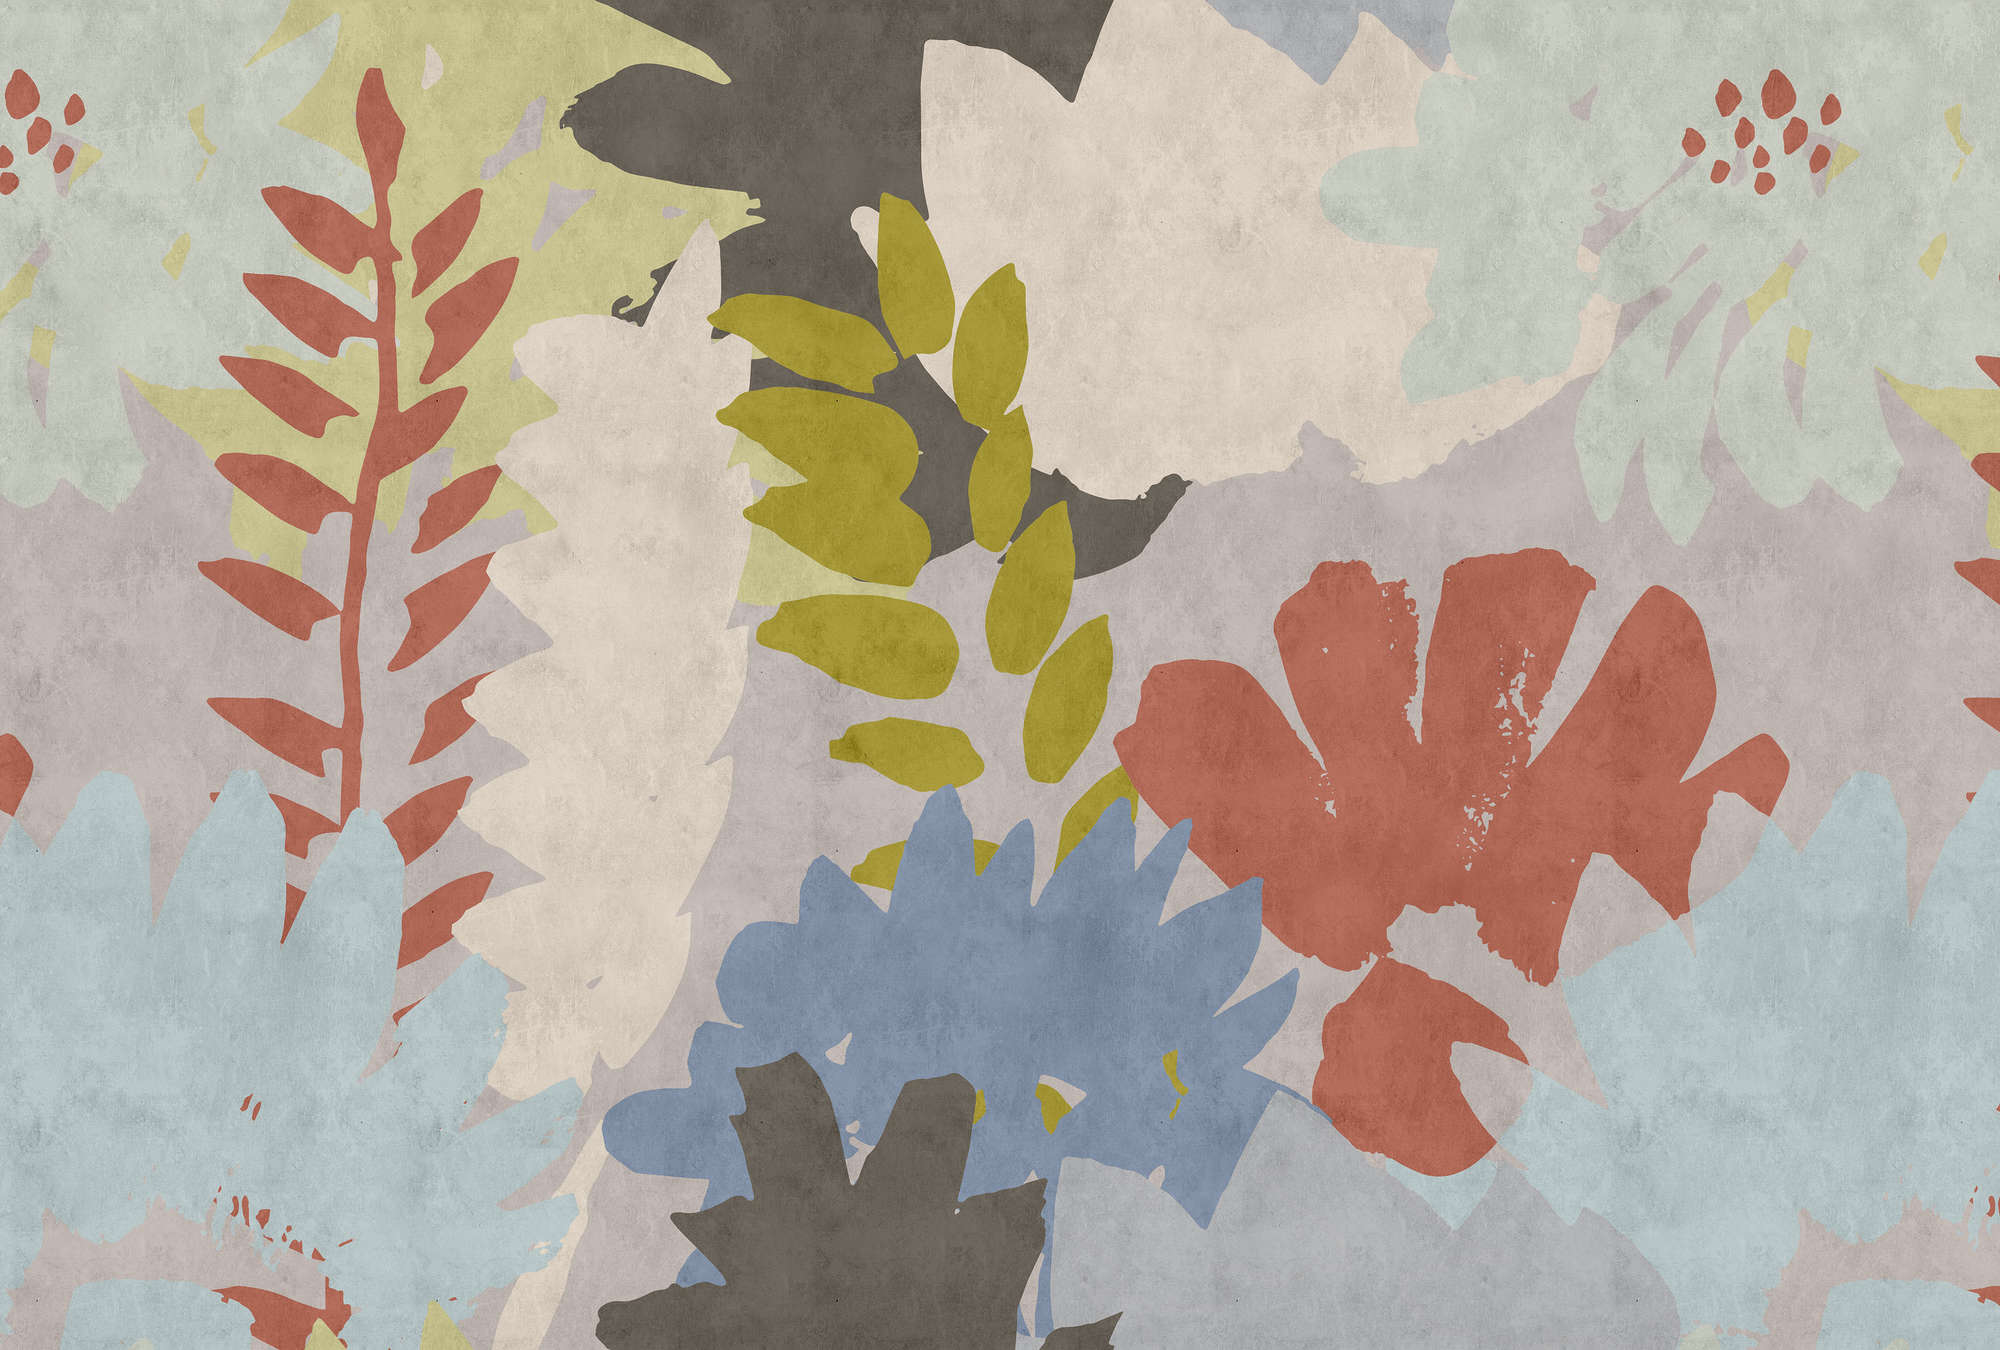             Floral Collage 3 - Papier peint abstrait à structure de papier buvard avec motif de feuilles - bleu, crème | intissé lisse nacré
        